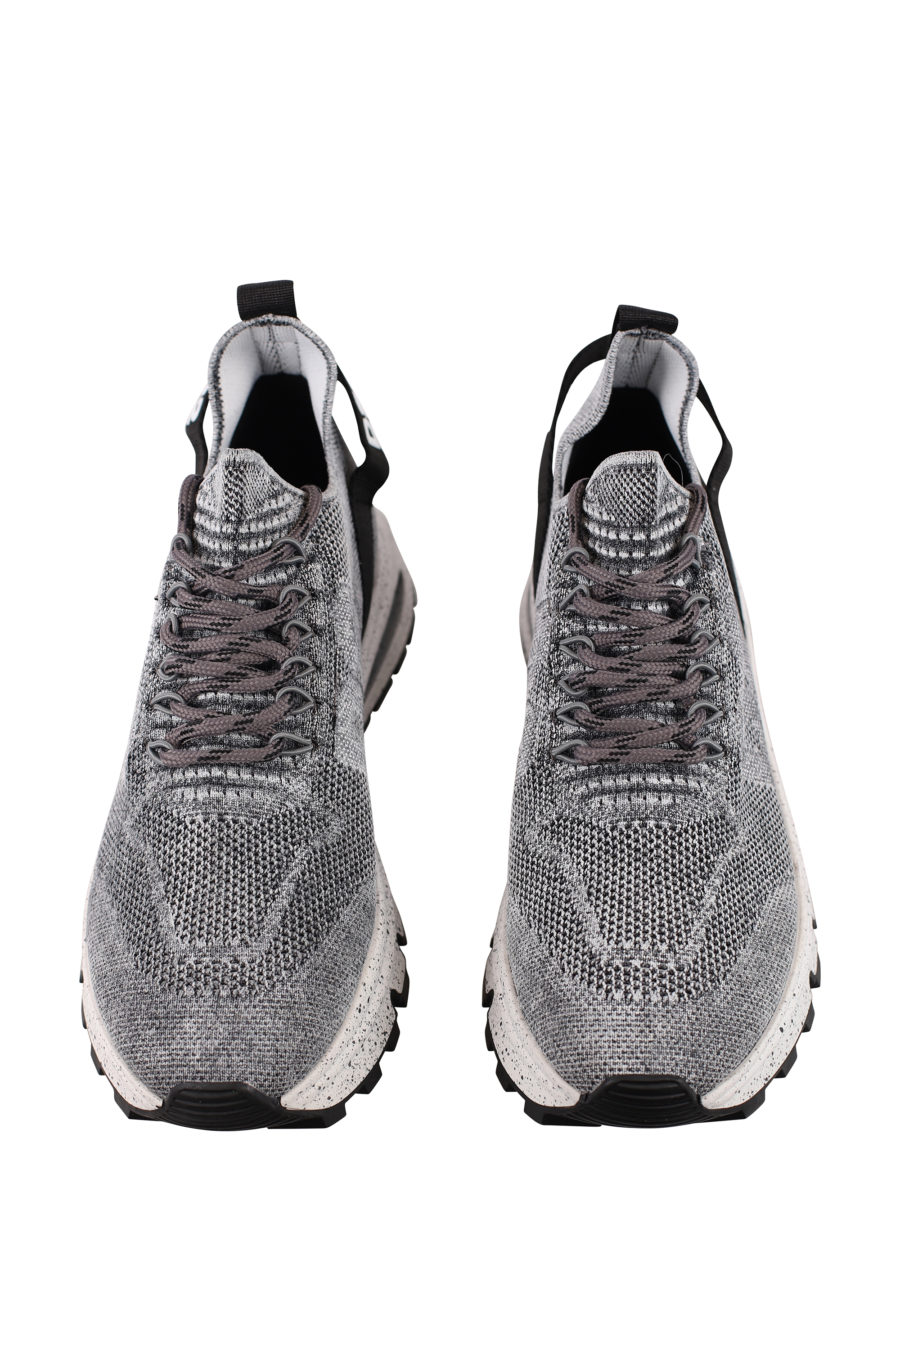 Zapatillas grises con logo pequeño blanco y "D2" - IMG 0715